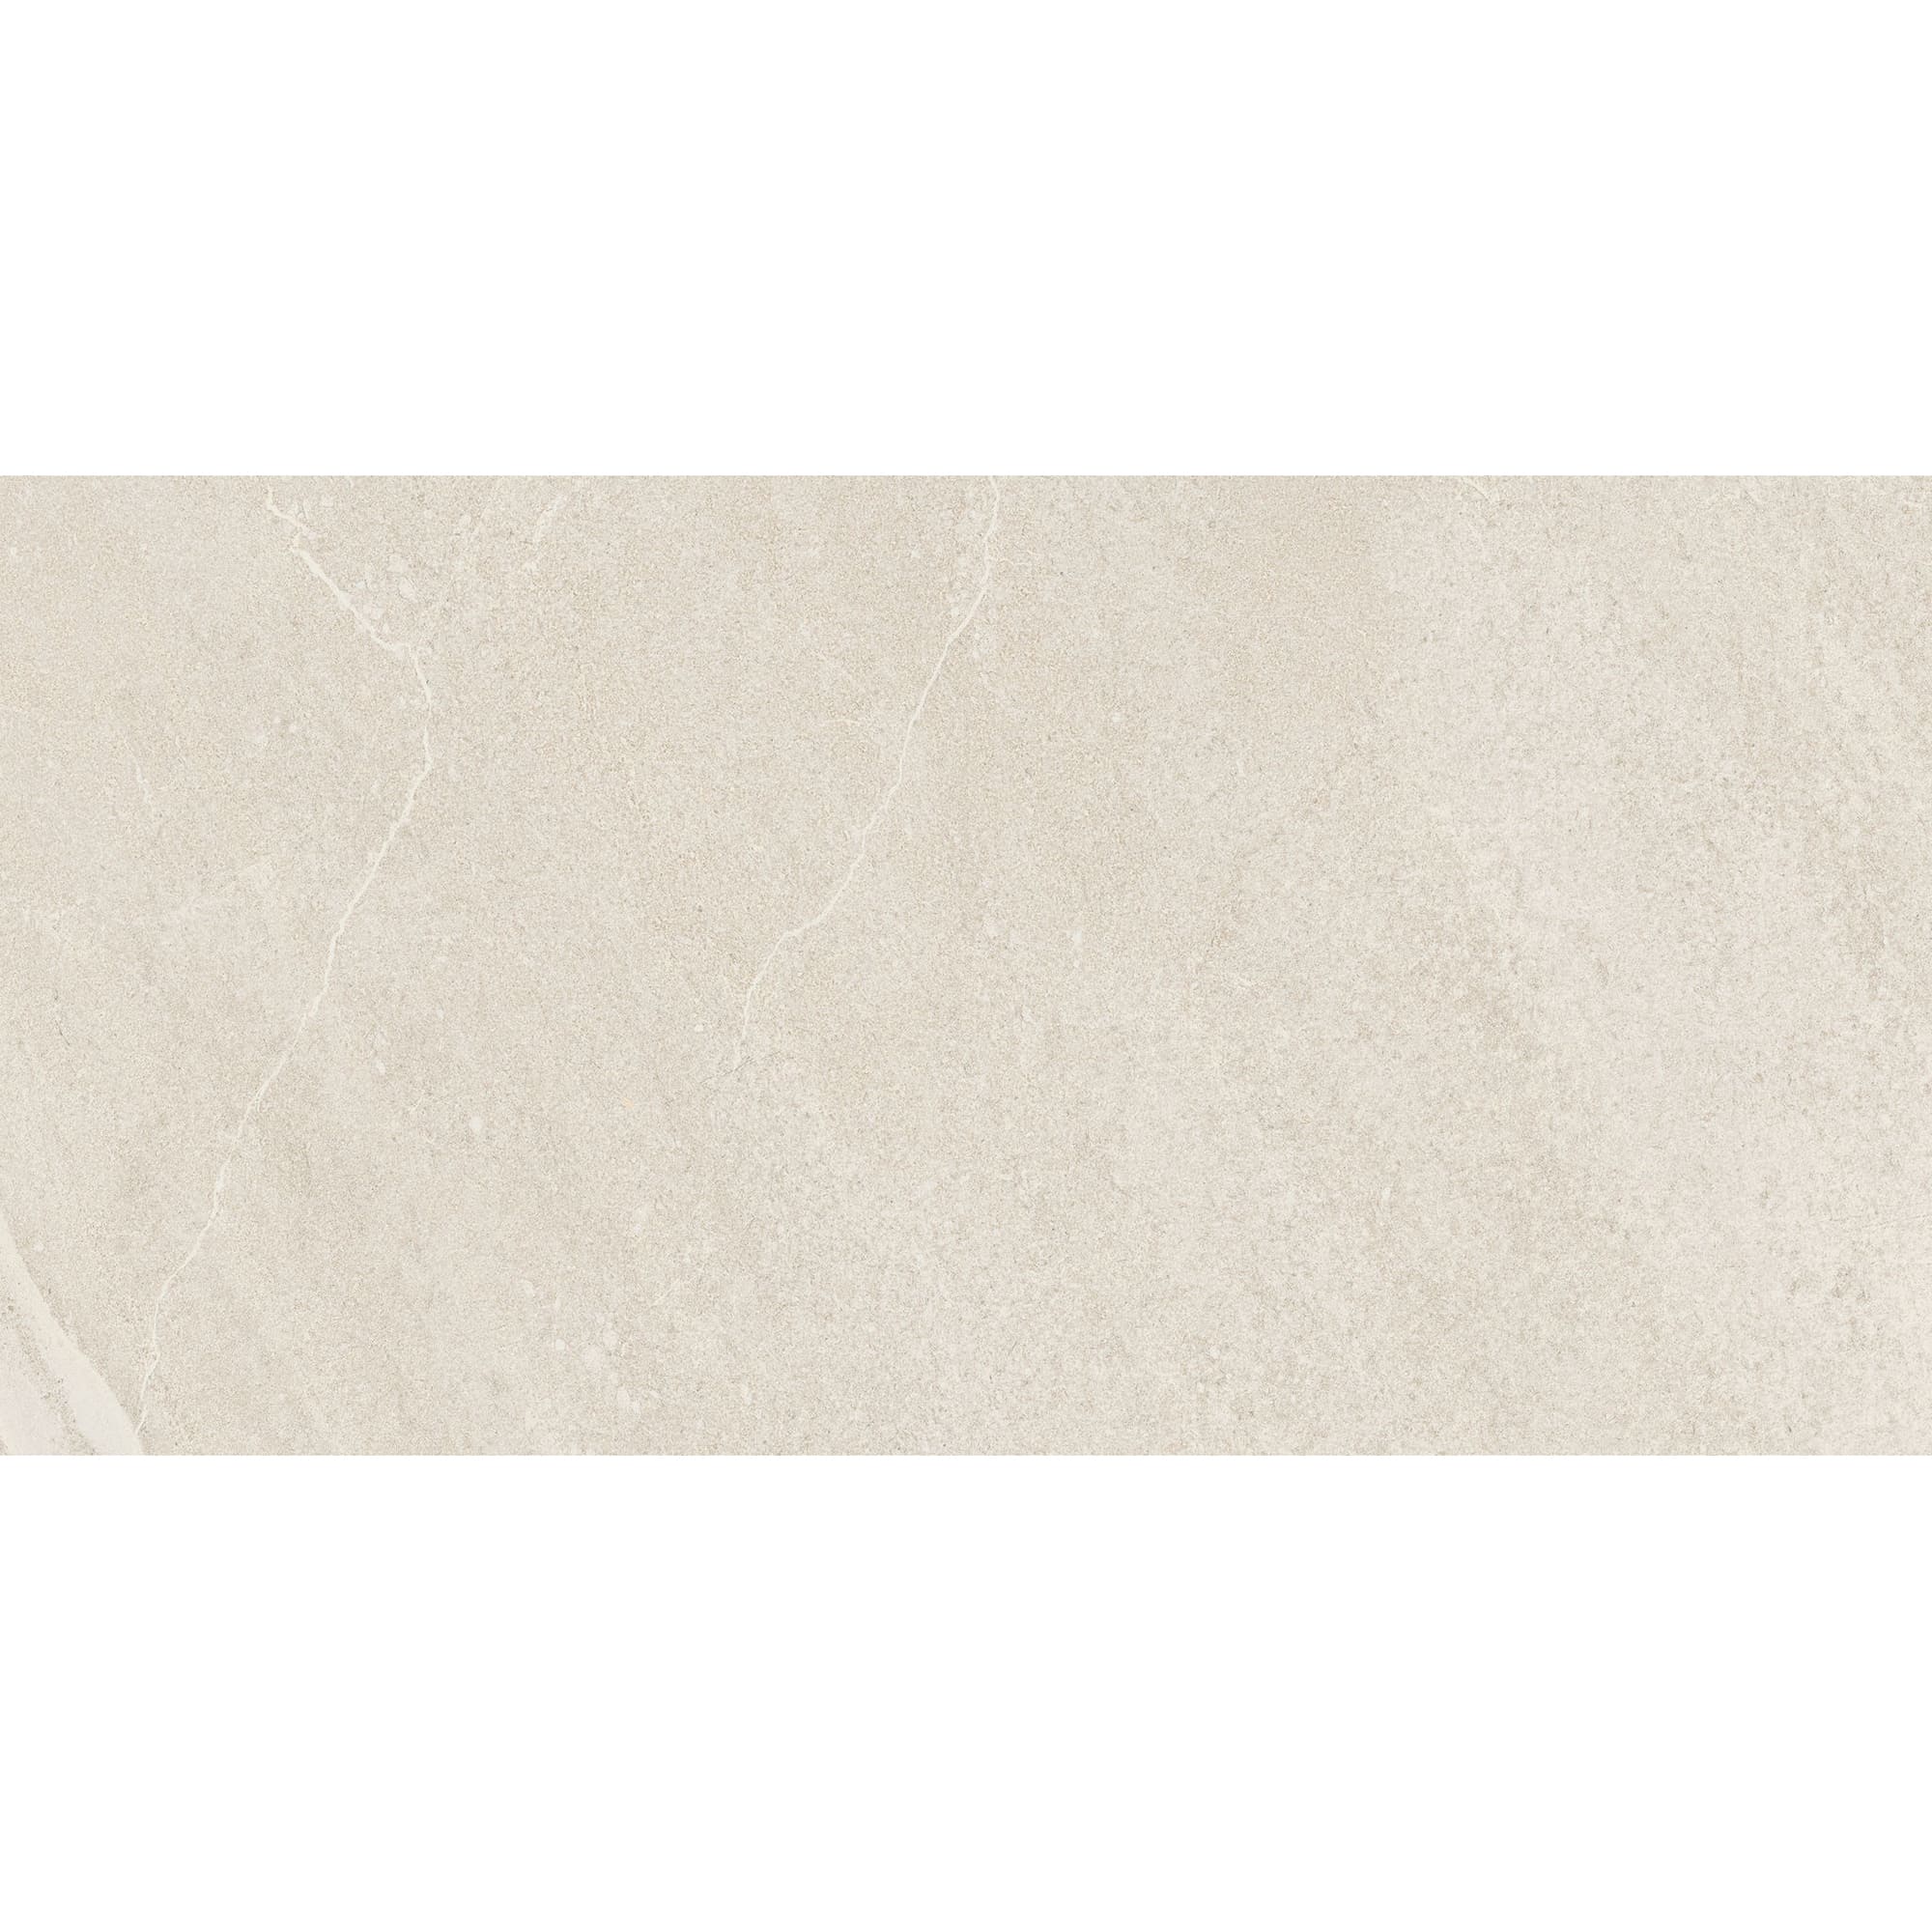 Плитка Estima Gabbro GB01 неполированный белый 60x120 см плитка estima montis mn01 36567 60х120 см полированный белый